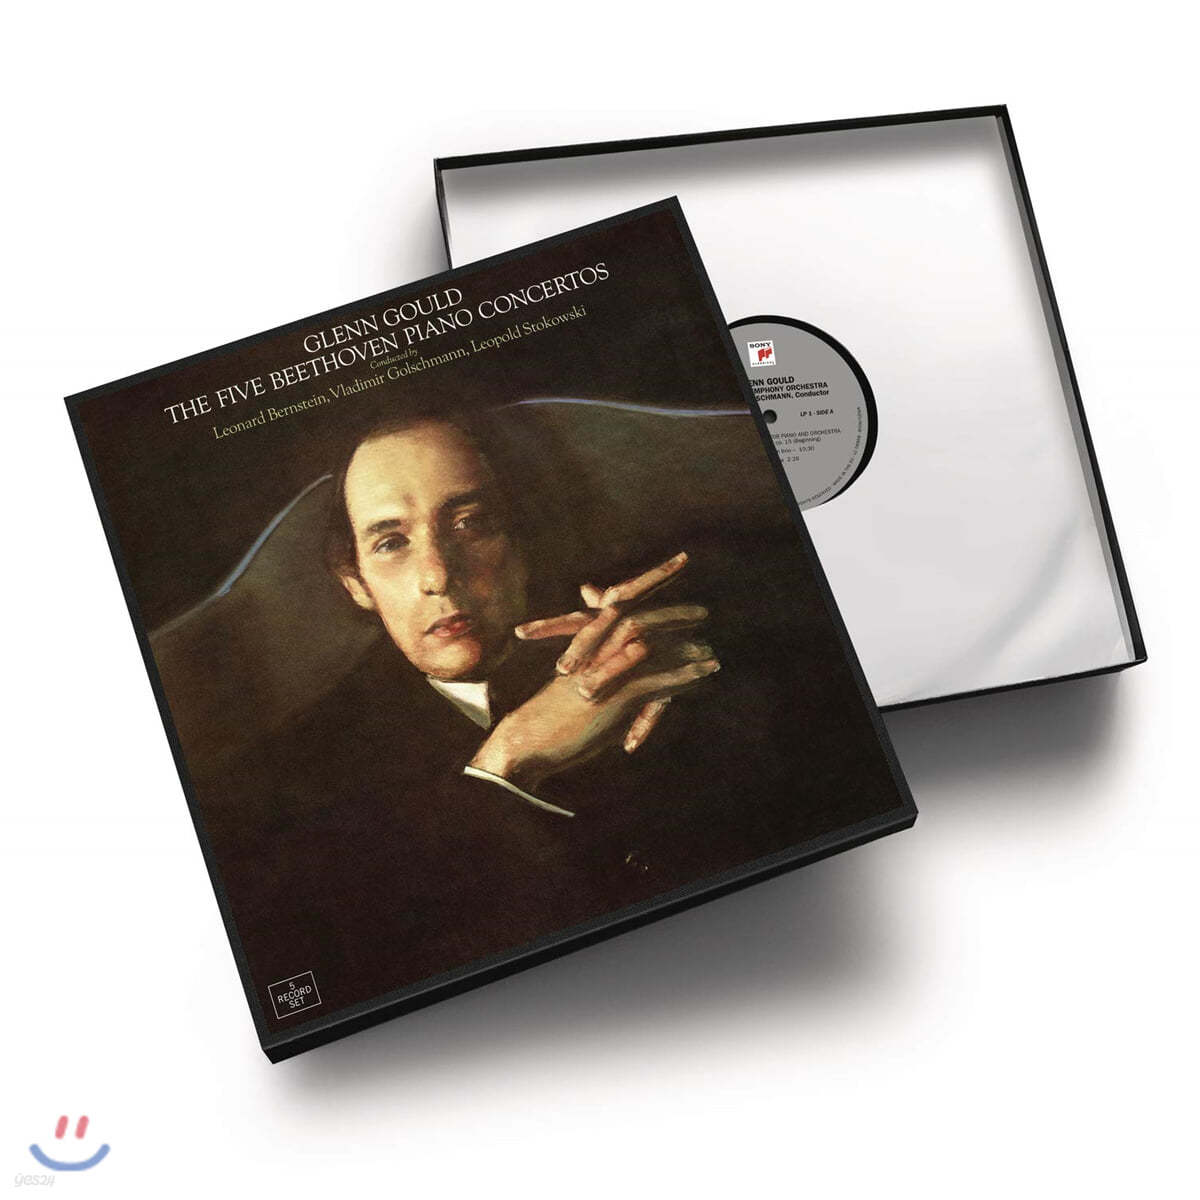 Glenn Gould 베토벤: 피아노 협주곡 전곡집 - 글렌 굴드 (Beethoven: The Five Piano Concertos) [5LP] 